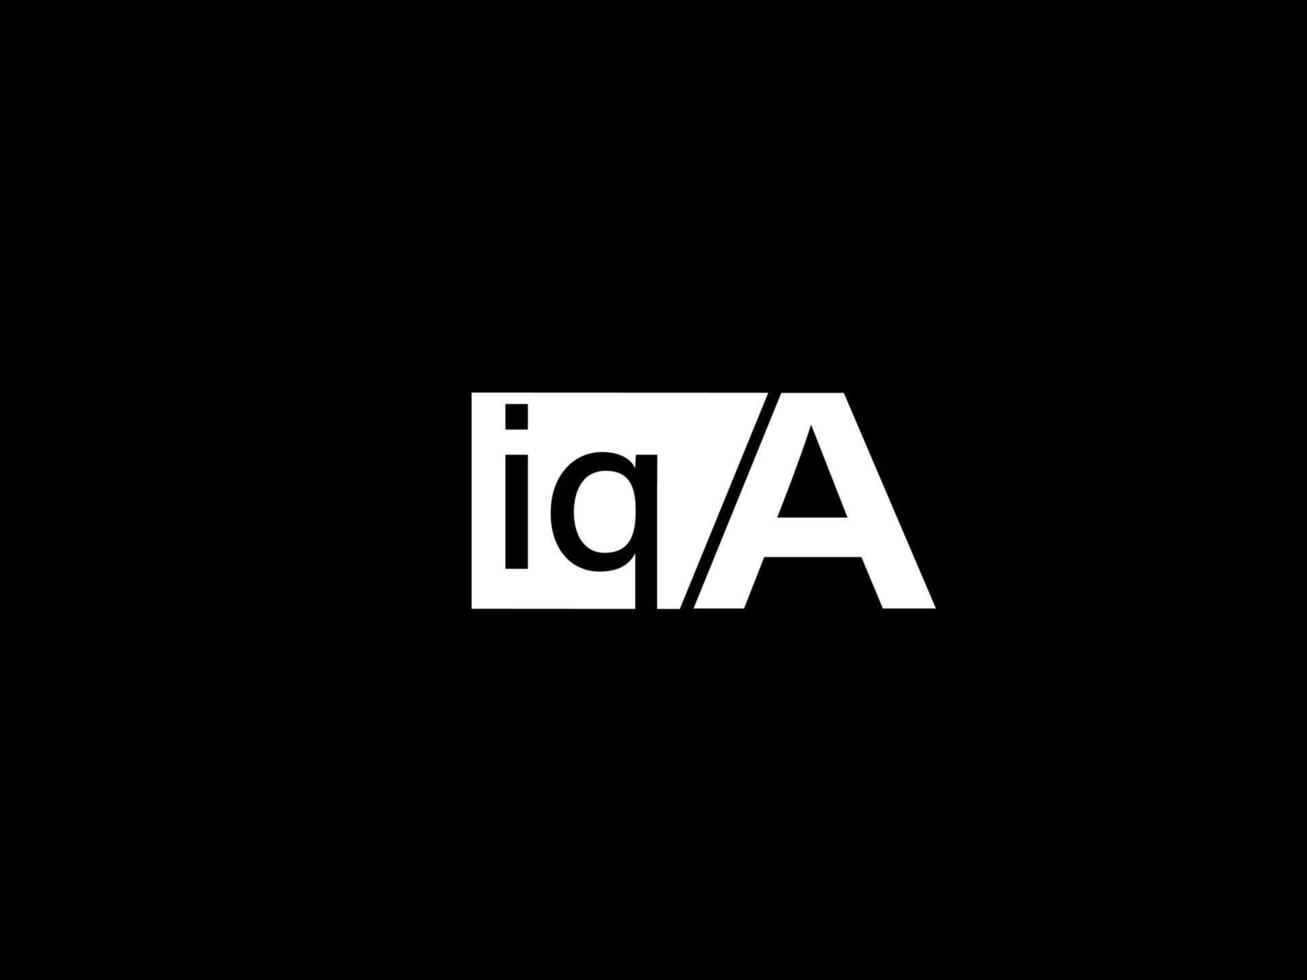 logo iqa et art vectoriel de conception graphique, icônes isolées sur fond noir